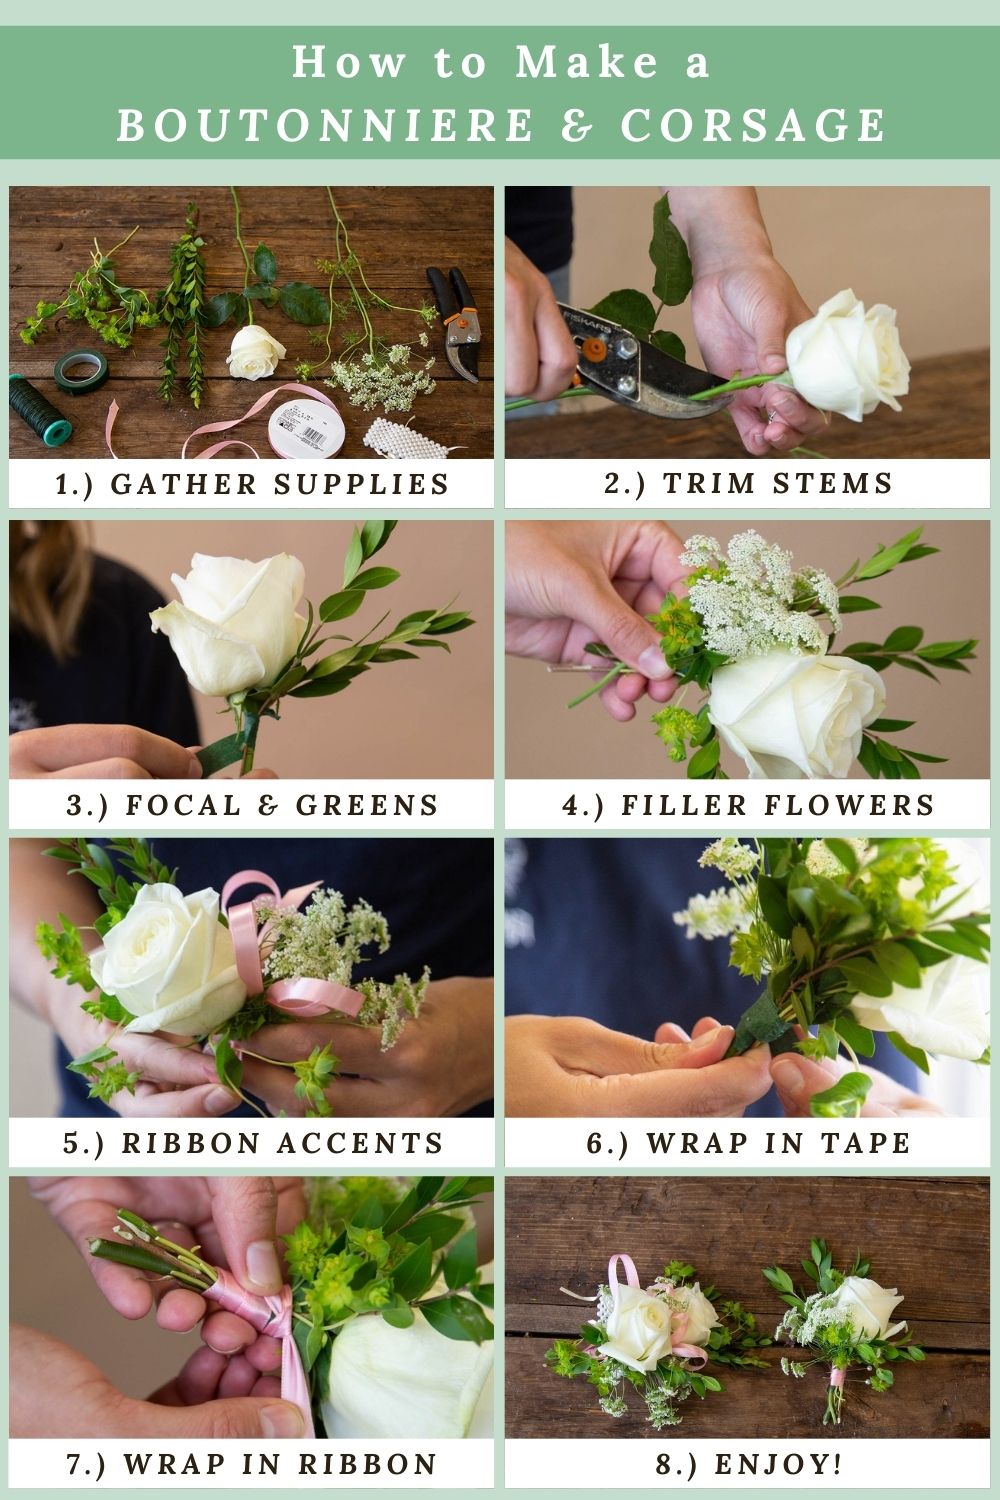 DIY Roses from Drinking Straw in 4 Ways - DIY Tutorials